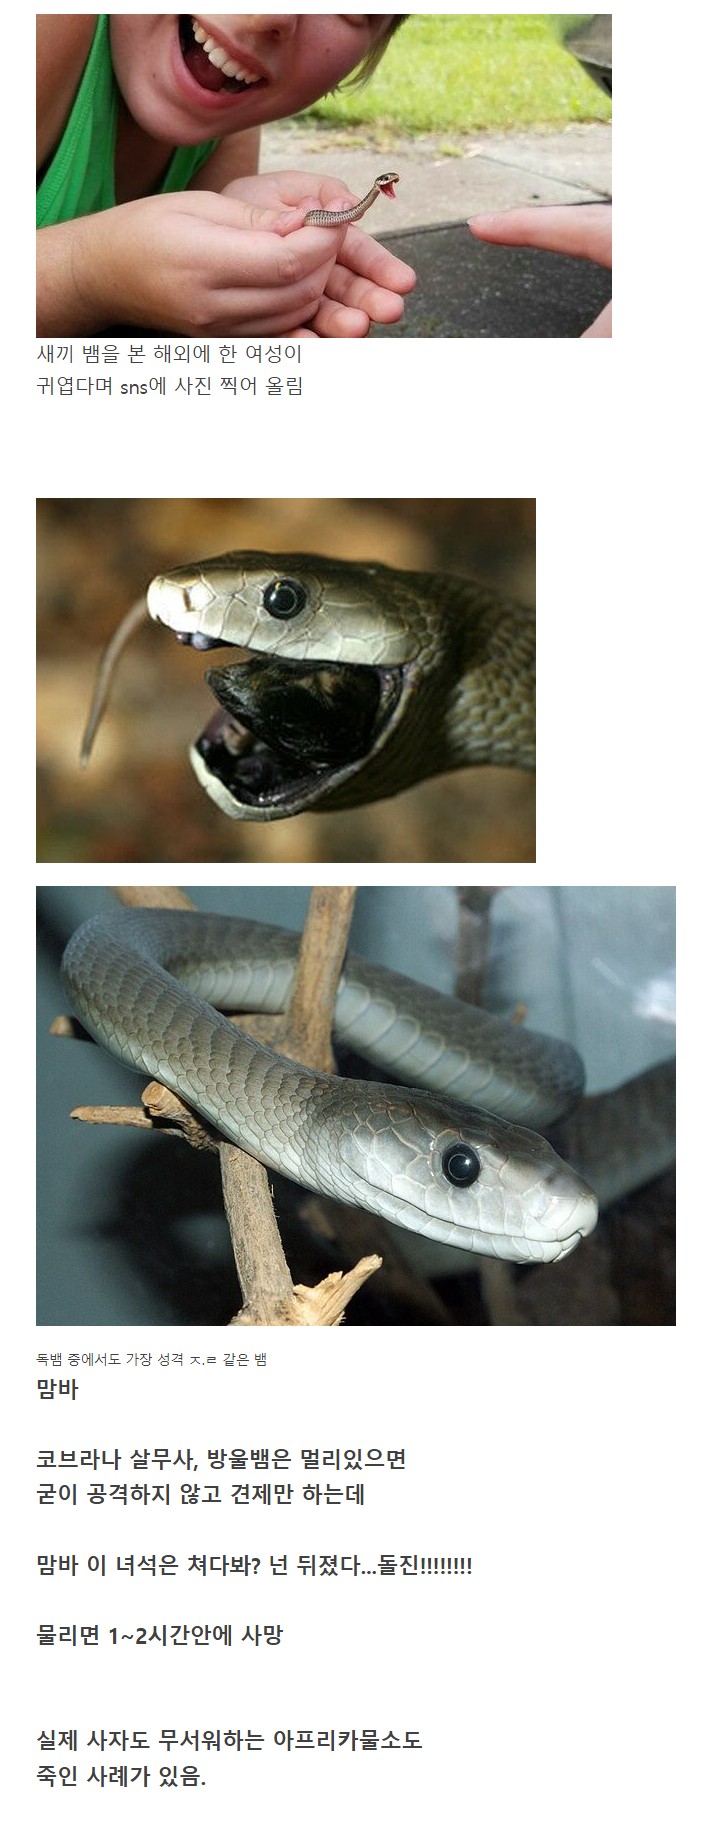 nokbeon.net-귀여운 뱀인줄 알고 사진찍었는데 알고보니-1번 이미지